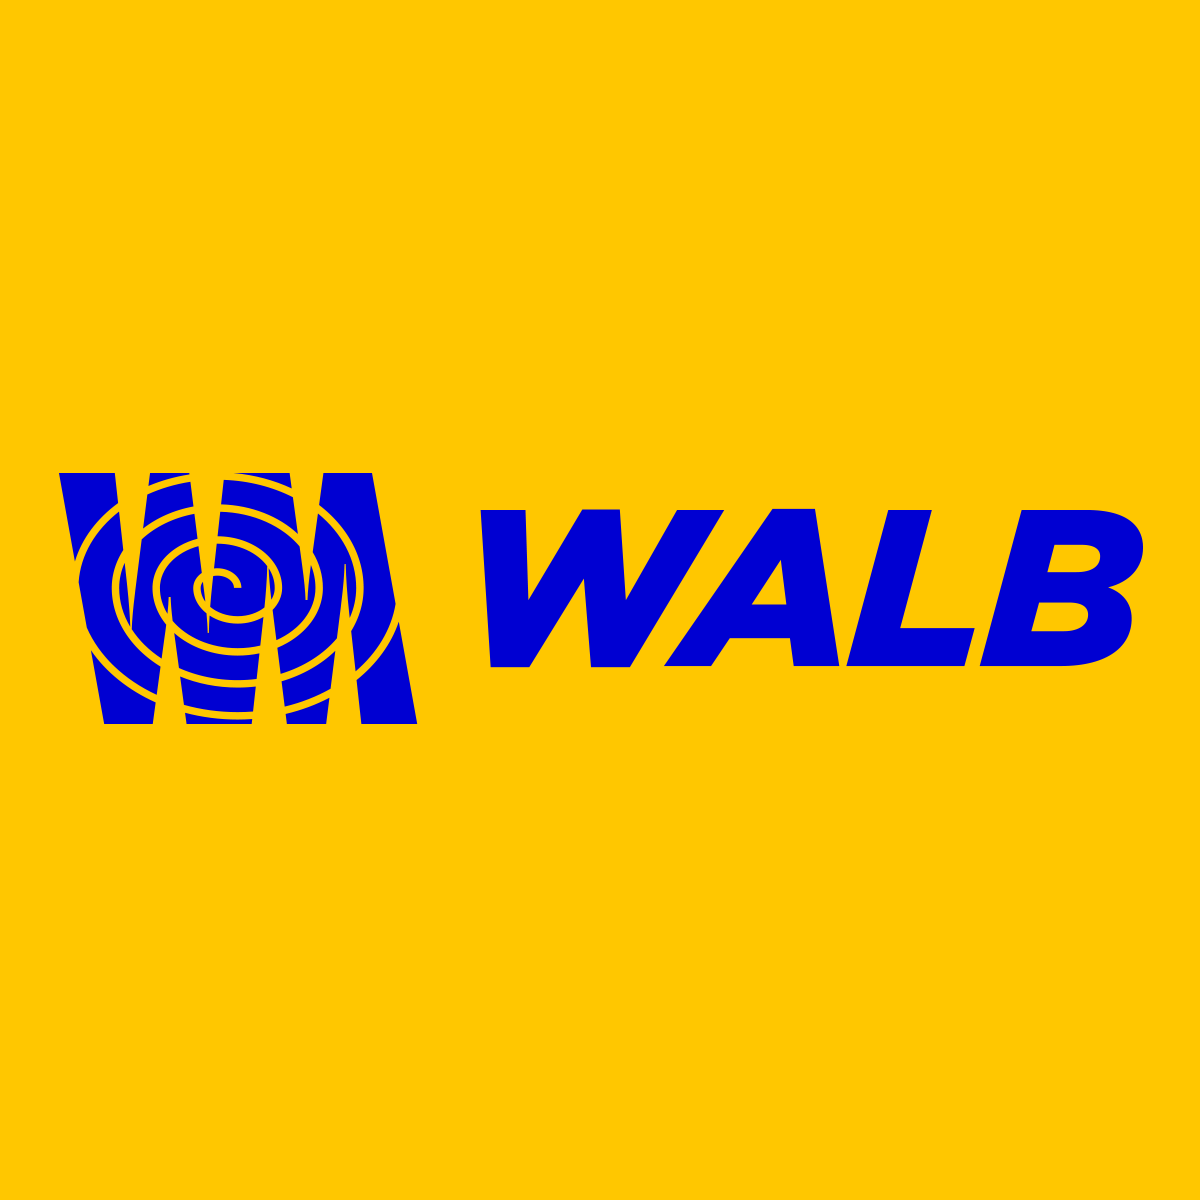 (c) Walbmolas.com.br